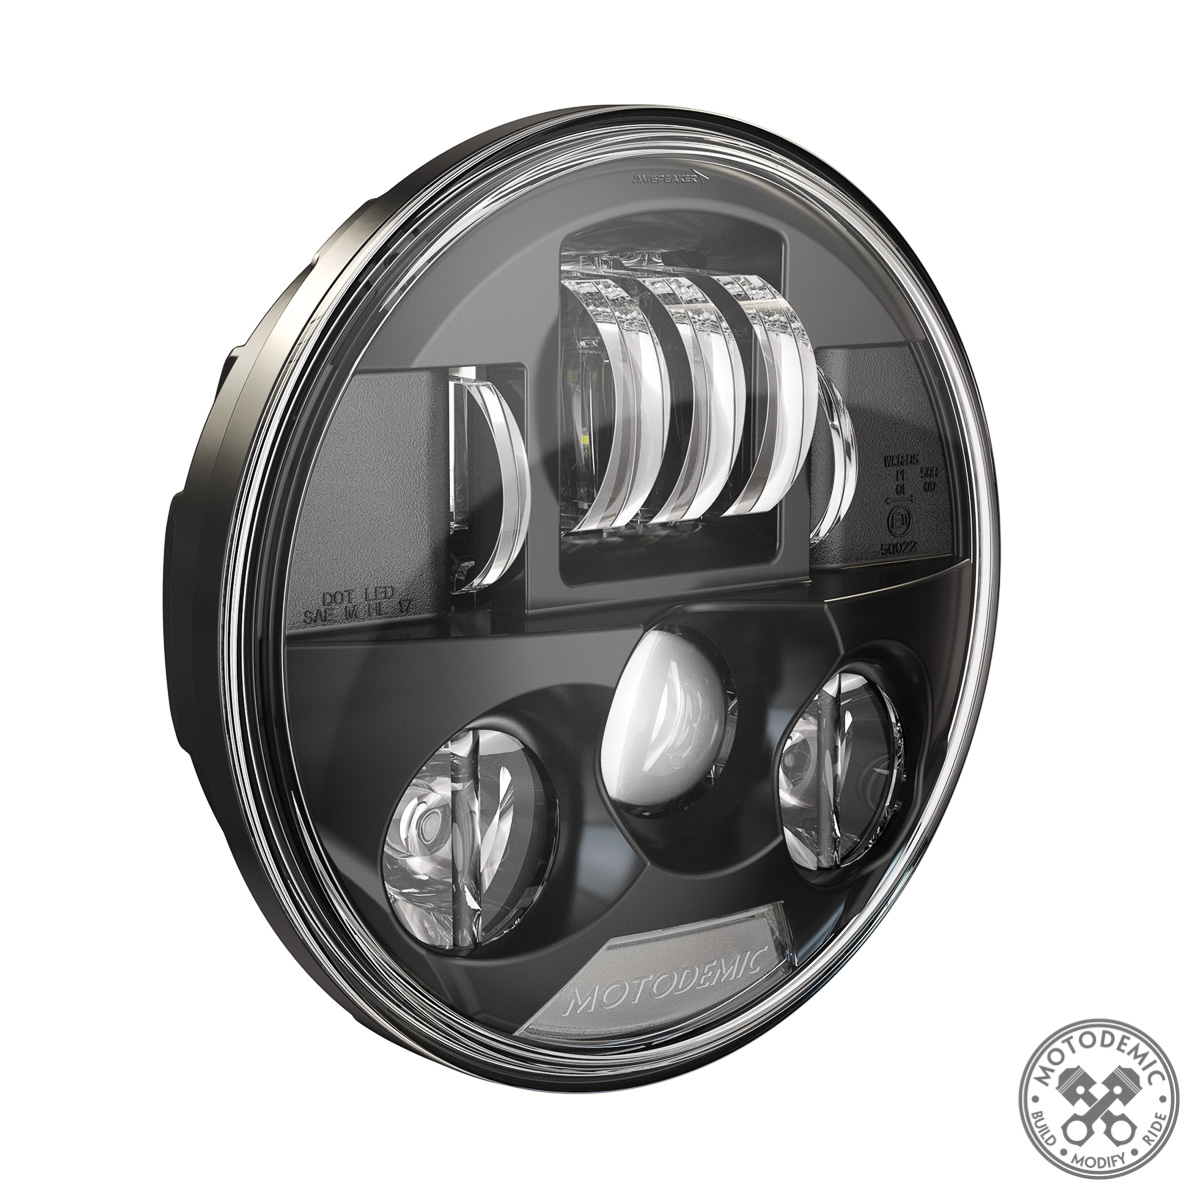 LED Headlight for Triumph Bobber • MOTODEMIC